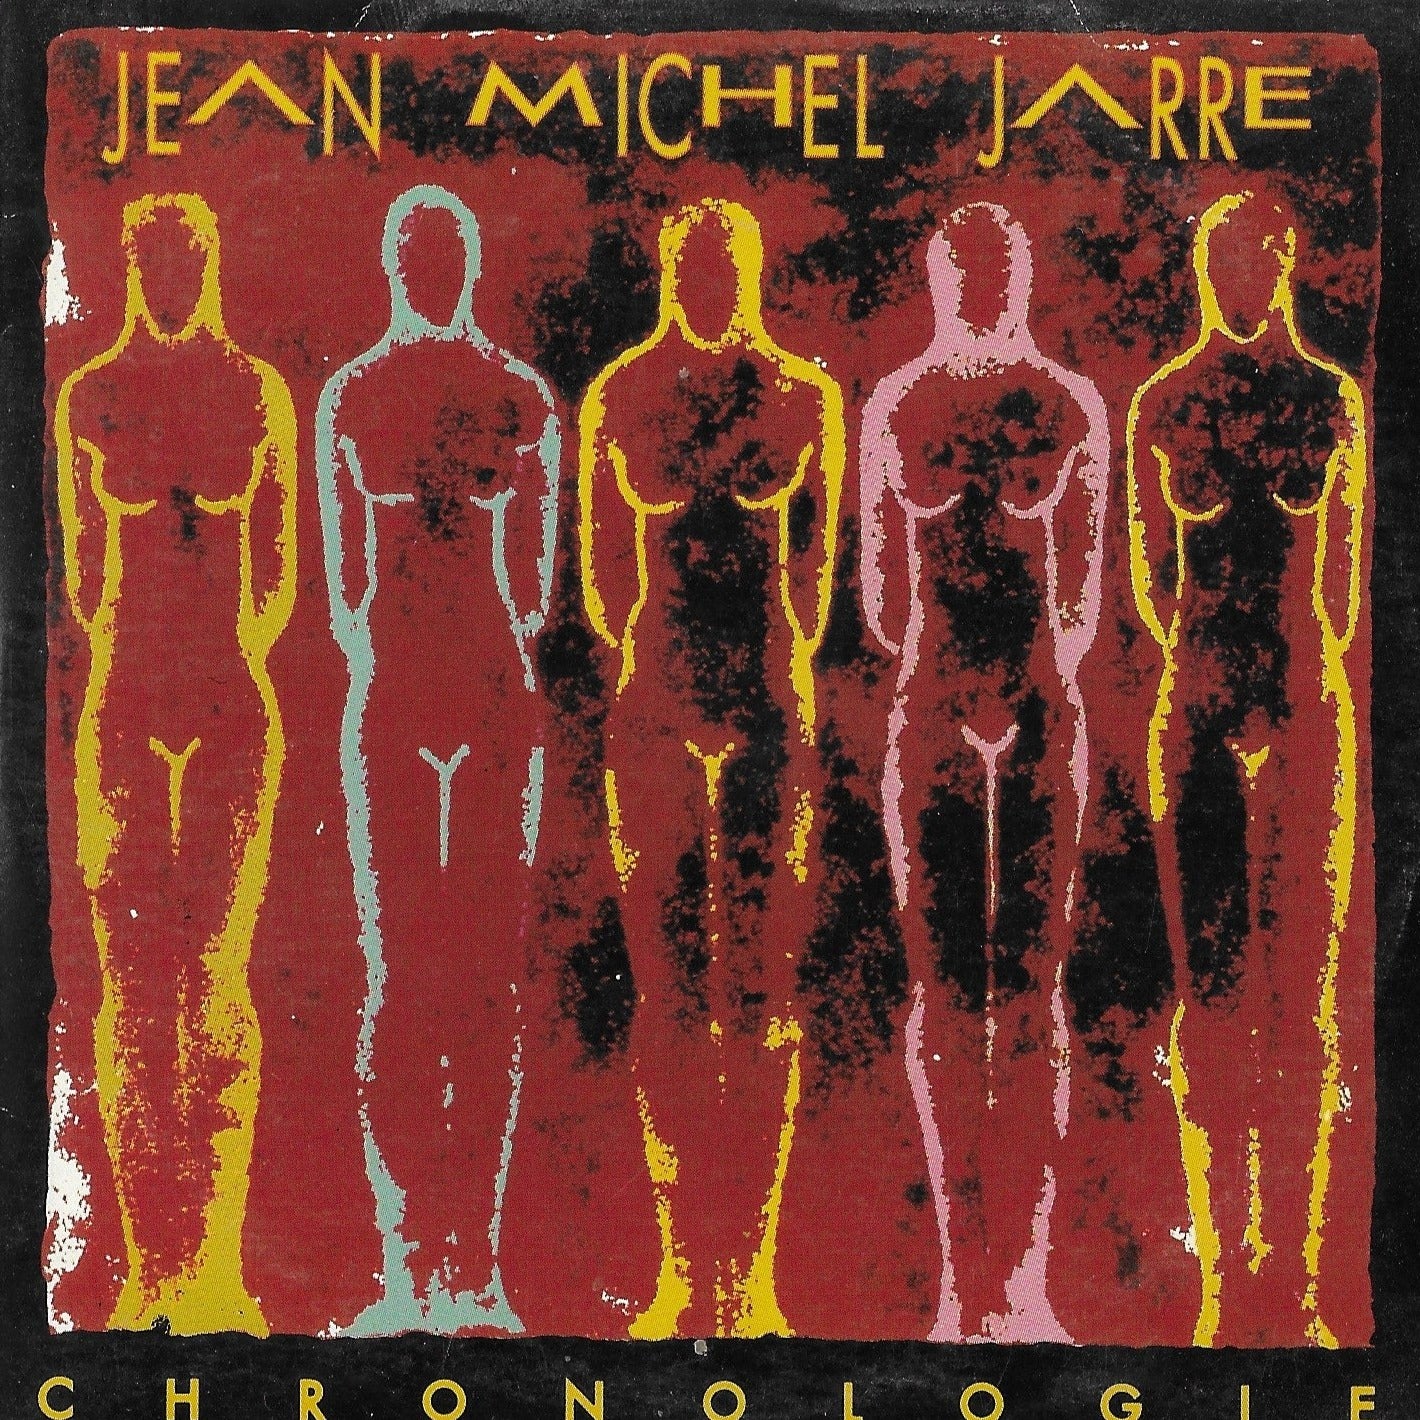 JEAN MICHEL JARRE - Chronologie Part. 4